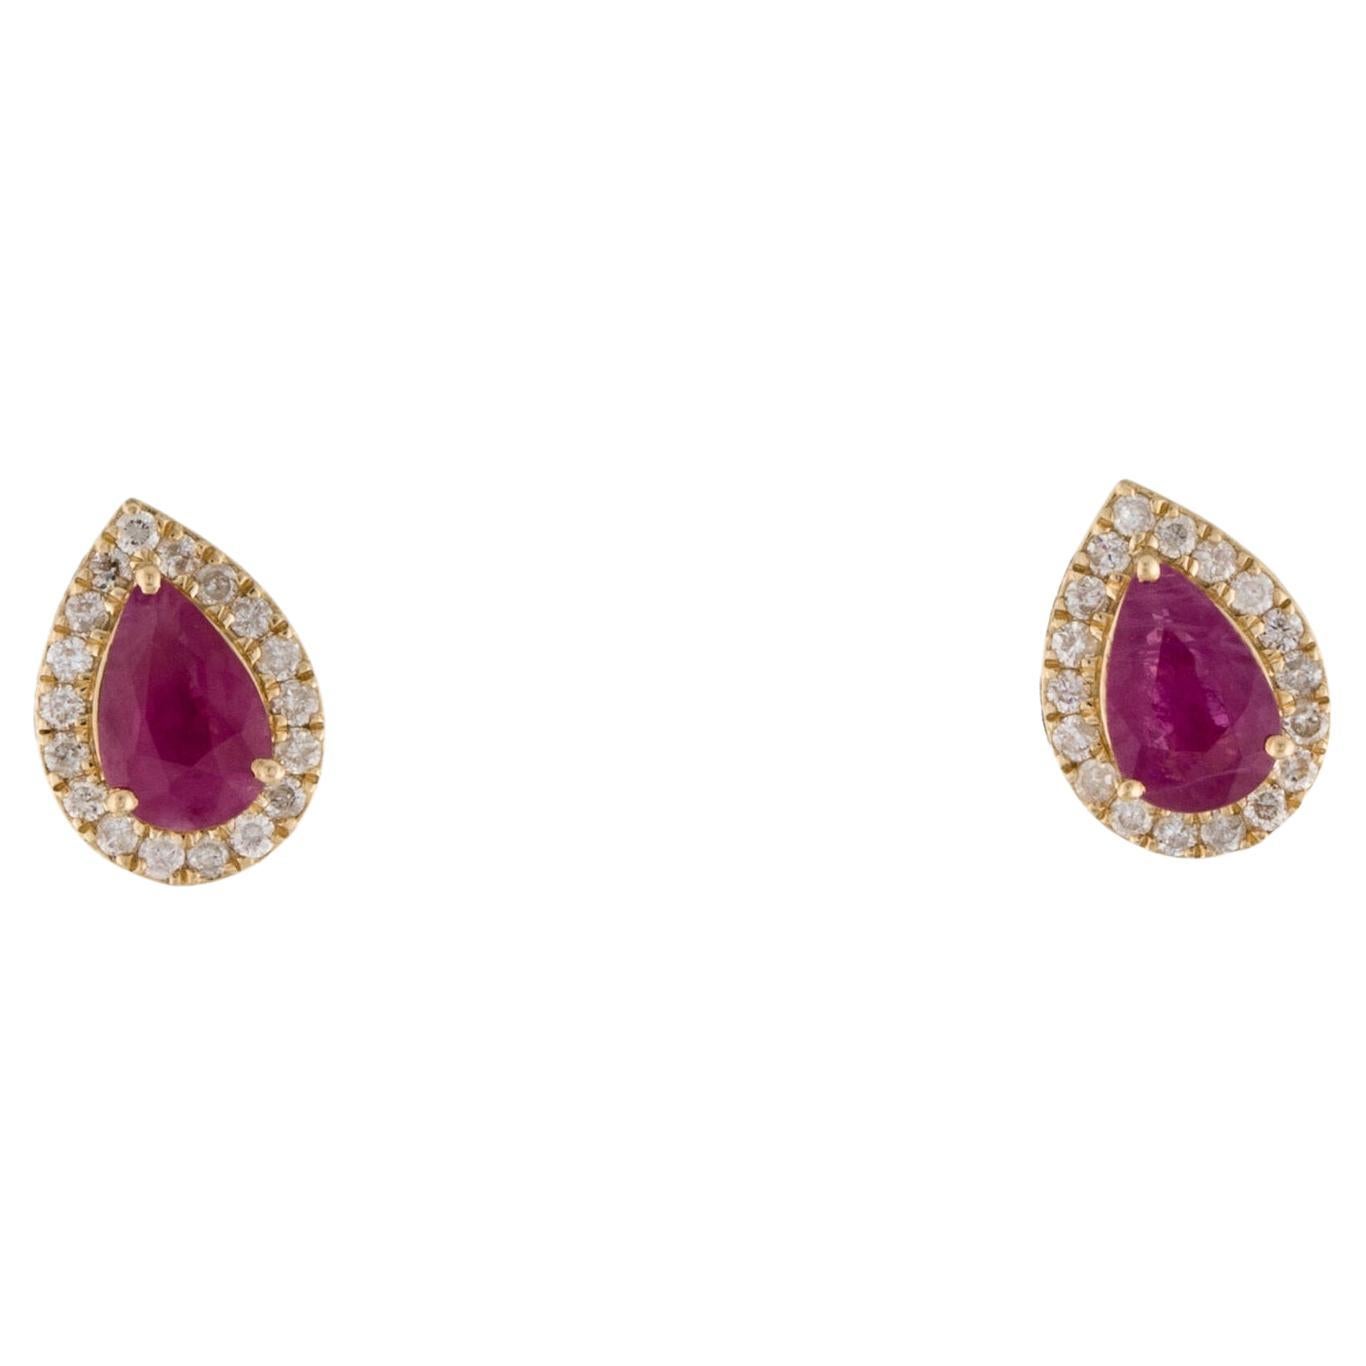 14K 1.11ctw Ruby & Diamond Halo Stud Earrings - Elegant Glamour, Timeless Design